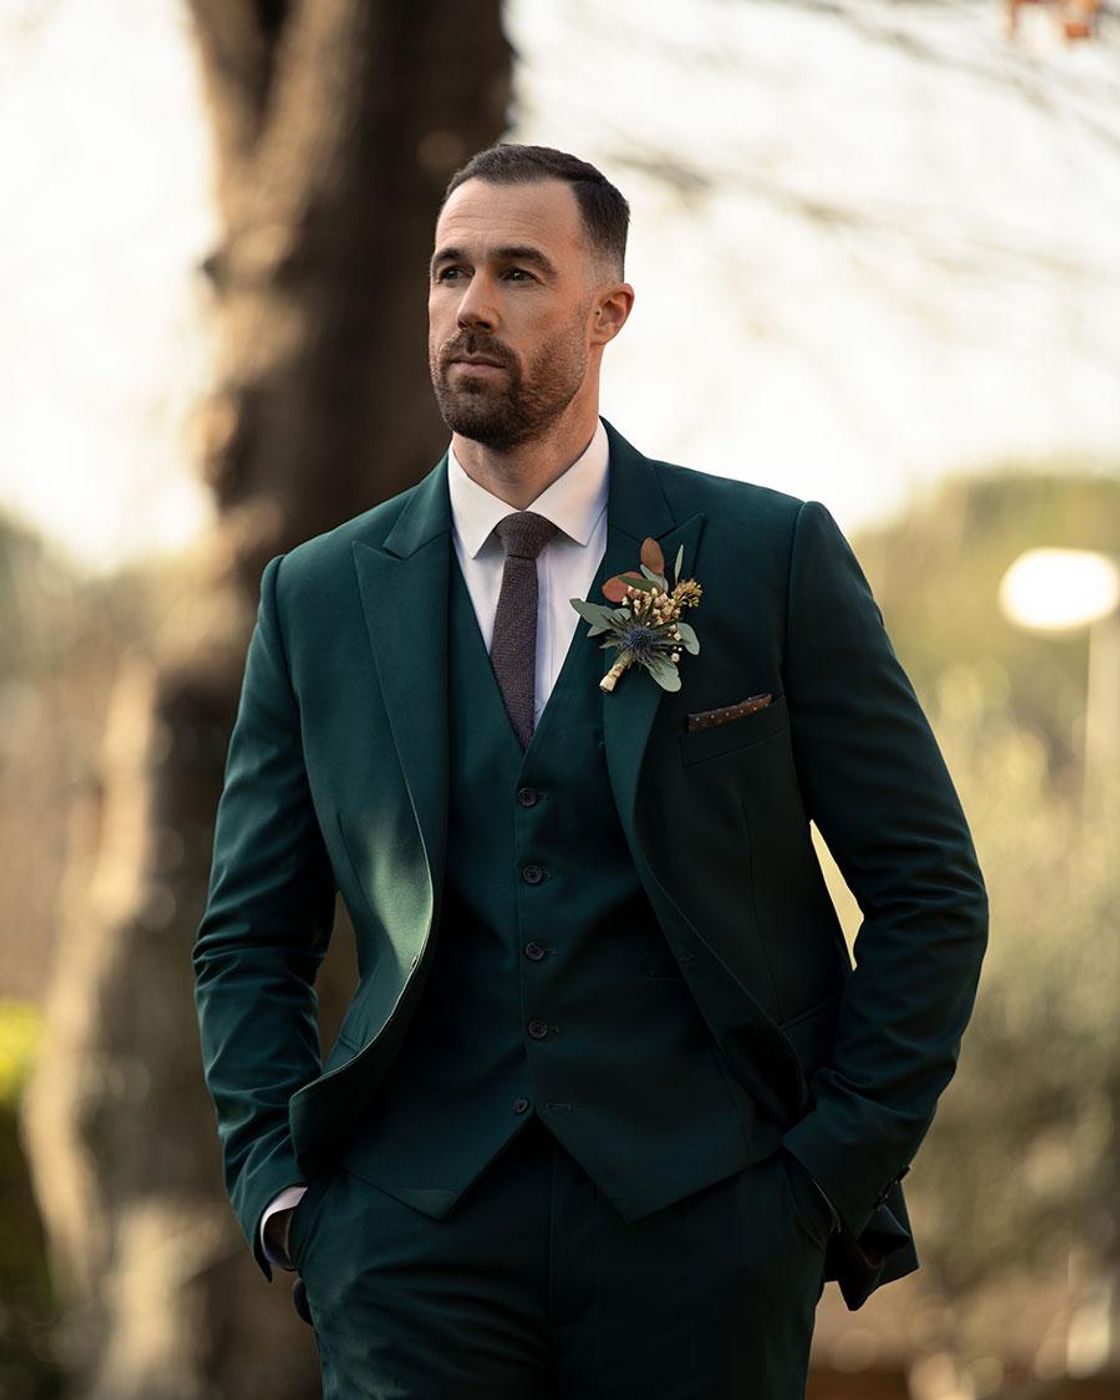 Green wedding suit